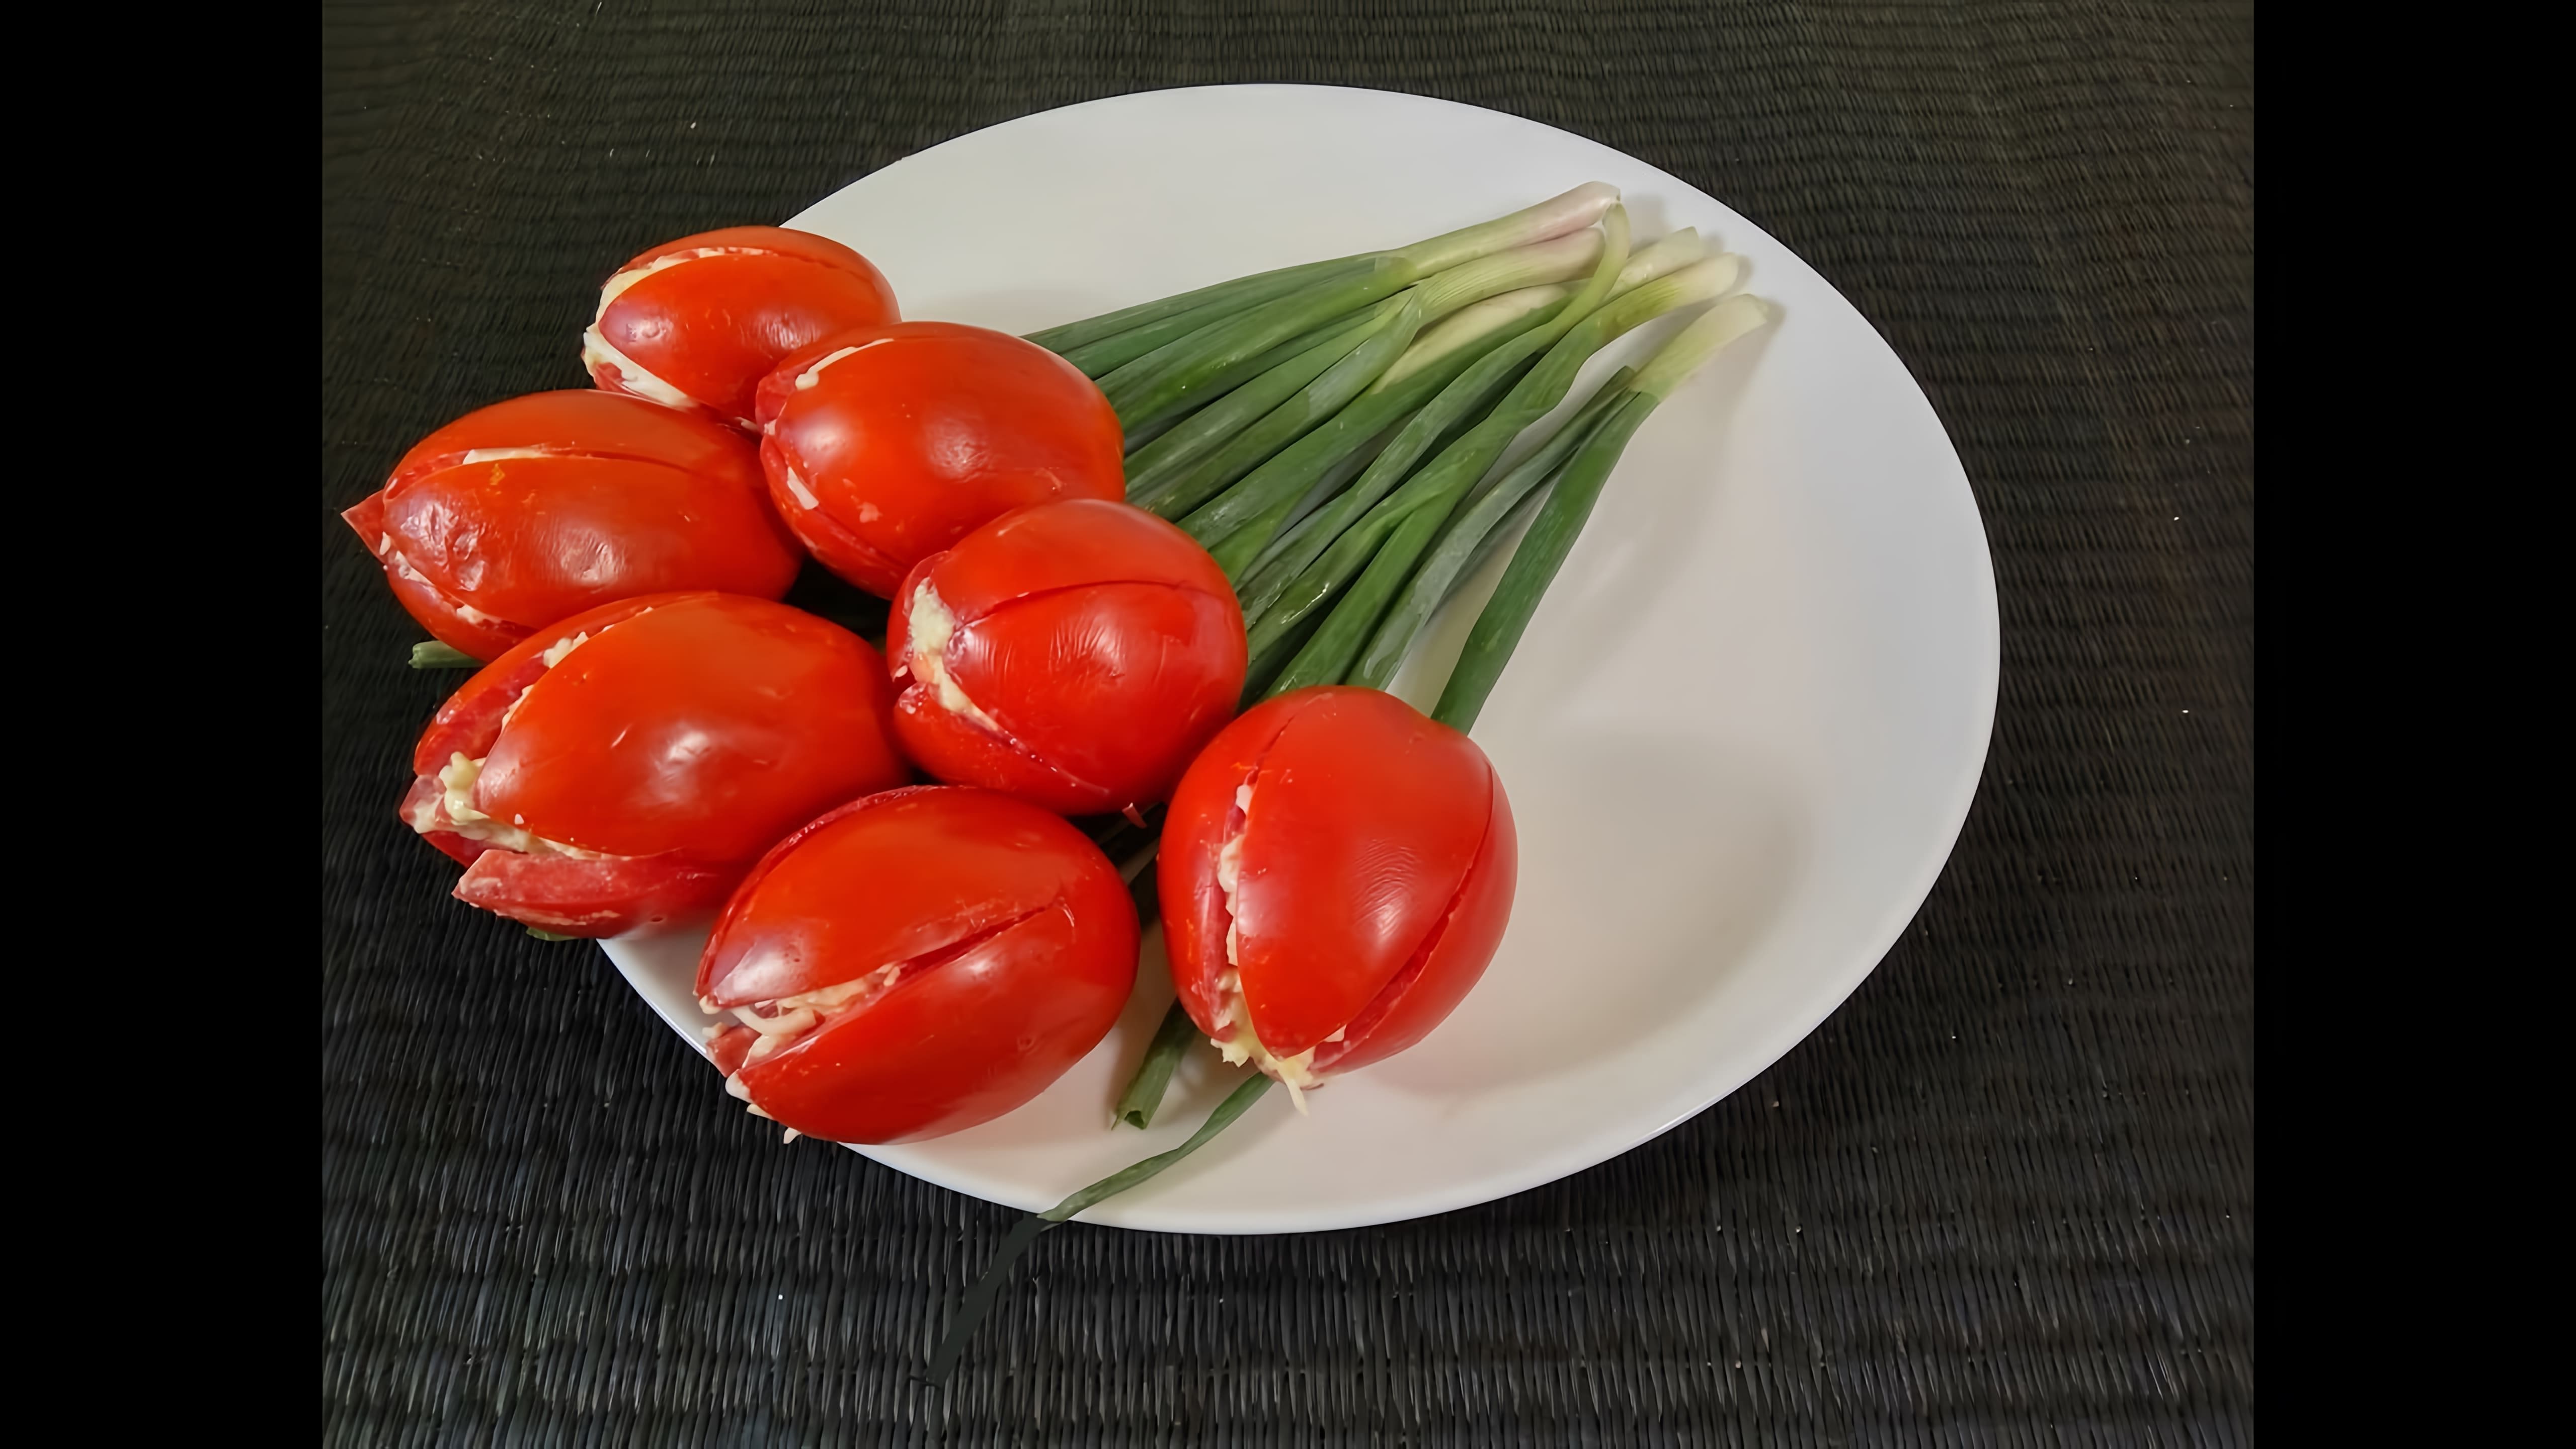 В этом видео демонстрируется процесс приготовления закуски из помидоров в виде тюльпанов с начинкой